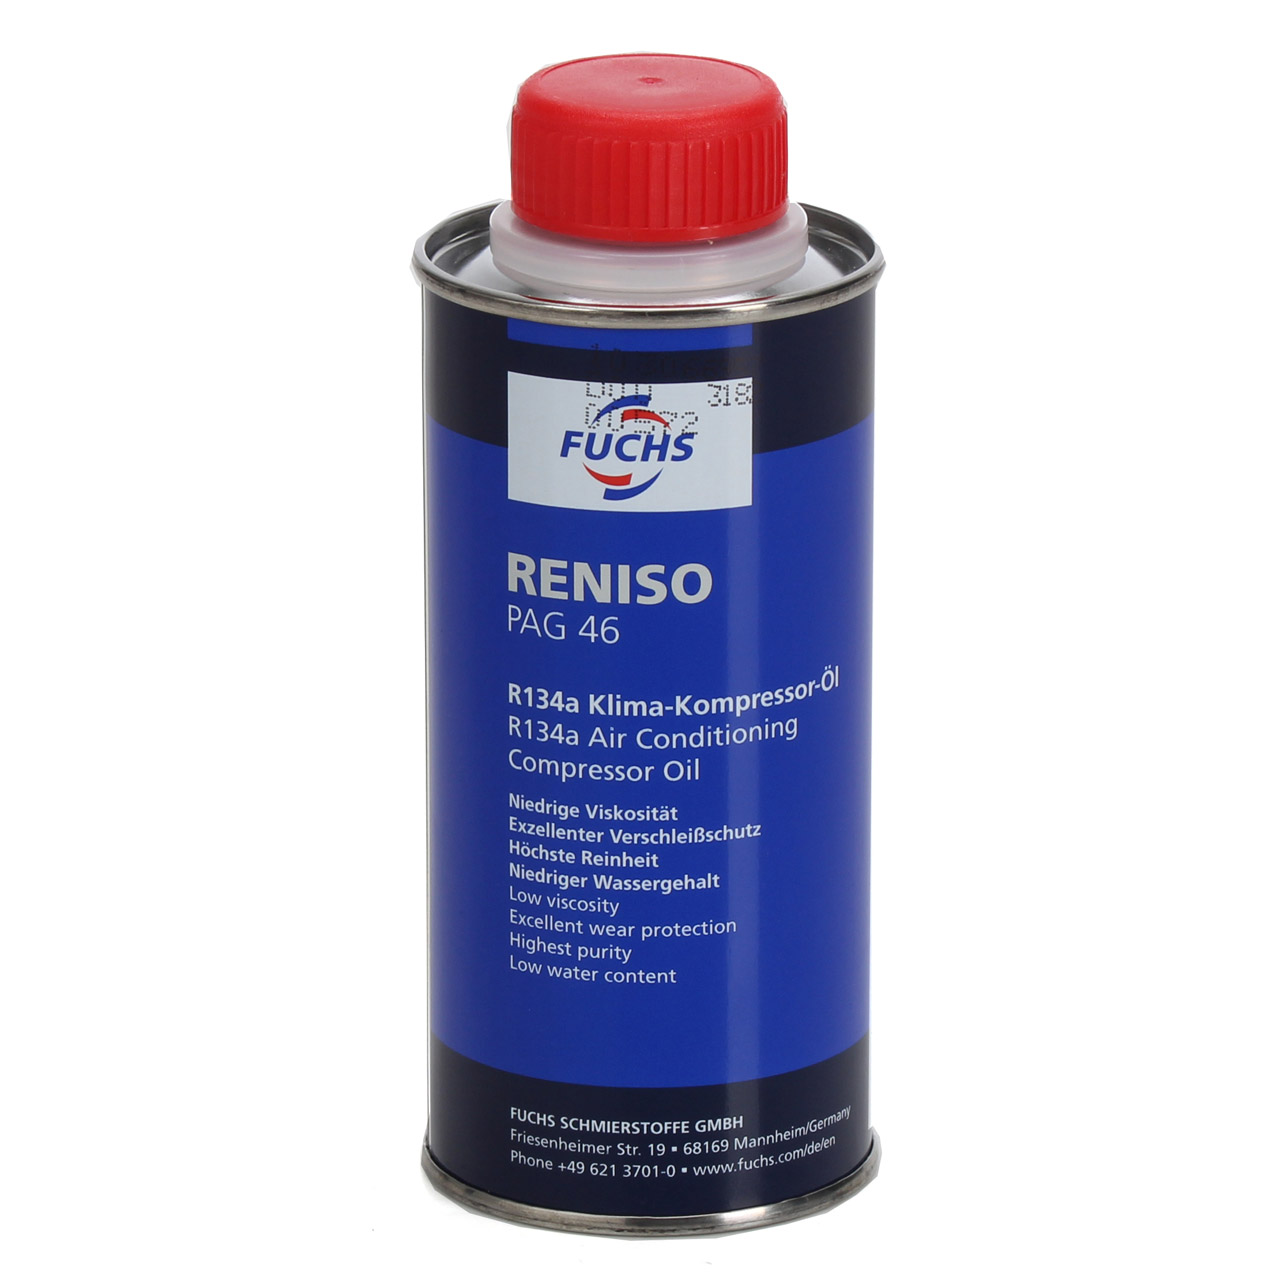 2x 250ml FUCHS RENISO PAG 46 R134a Kompressor Öl Kompressoröl Klimaanlagenöl